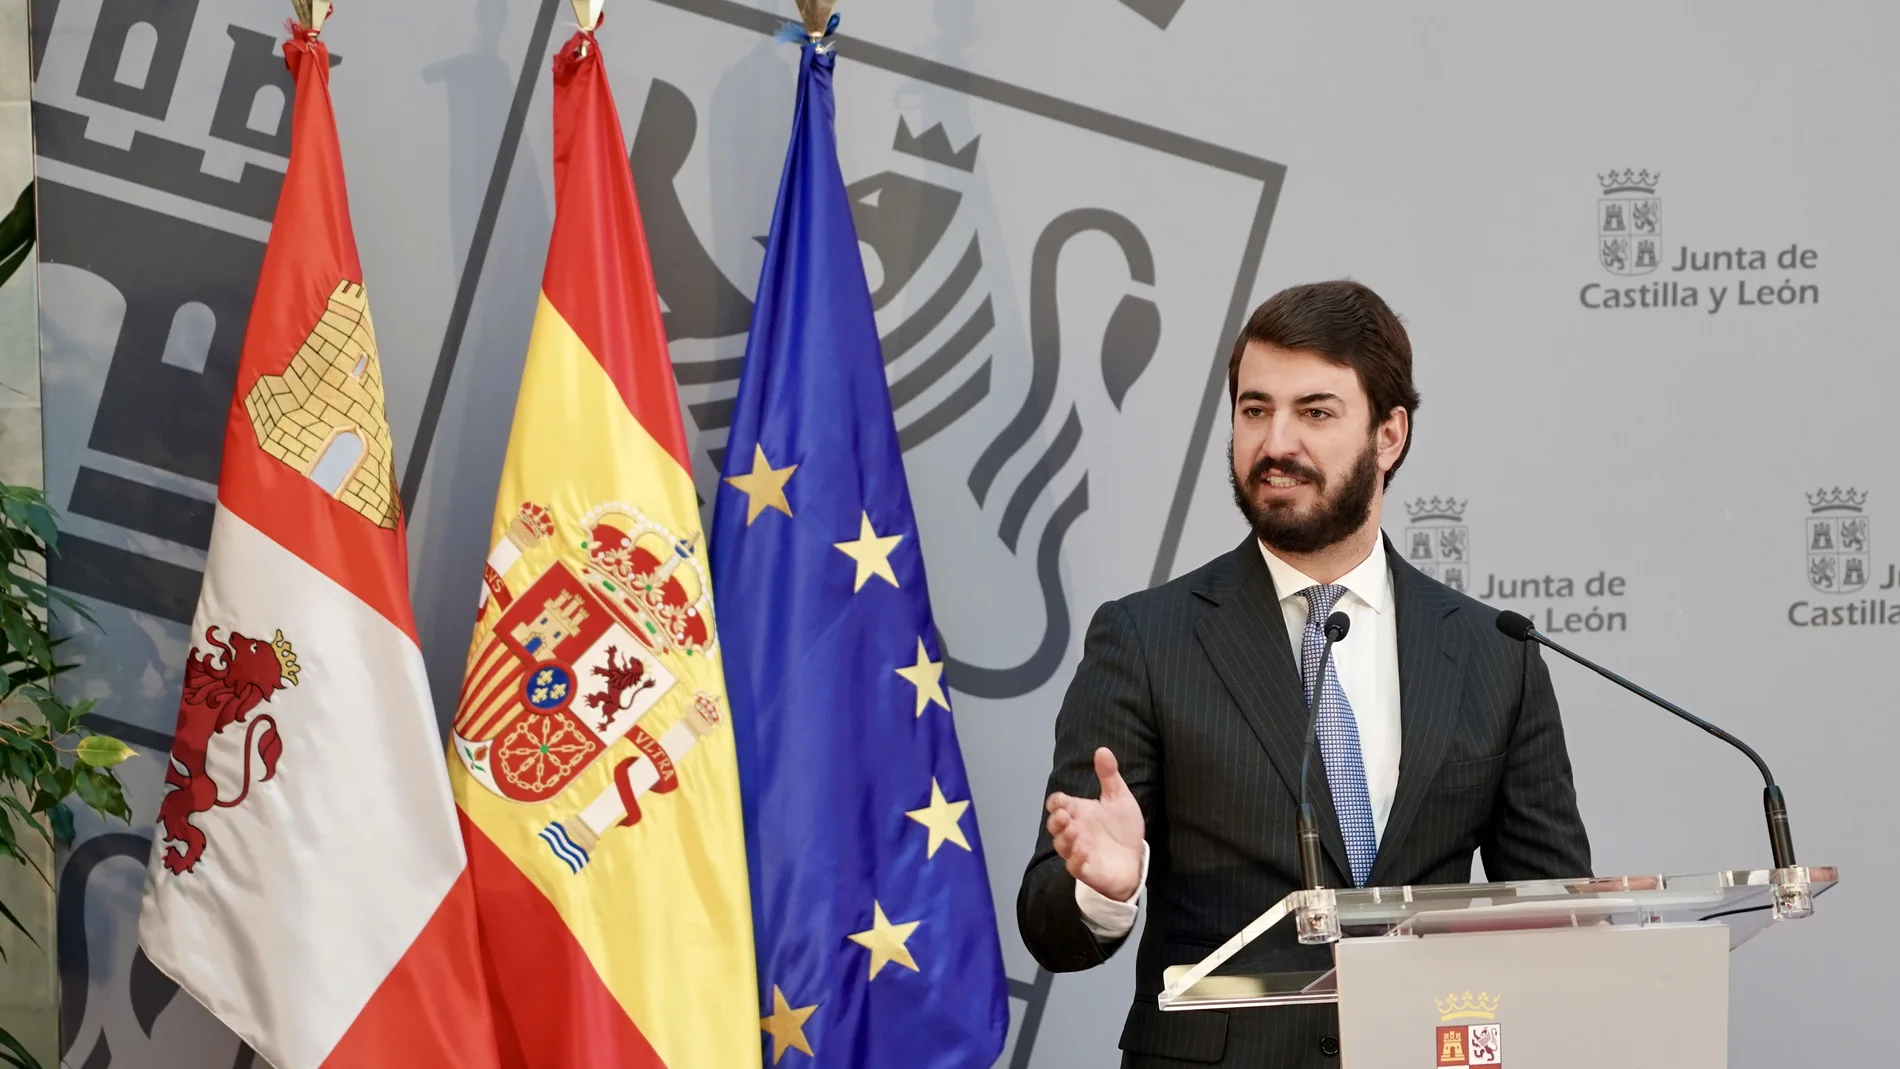 García-Gallardo: "No daremos ni un paso atrás en defensa de España y de la verdadera concordia"